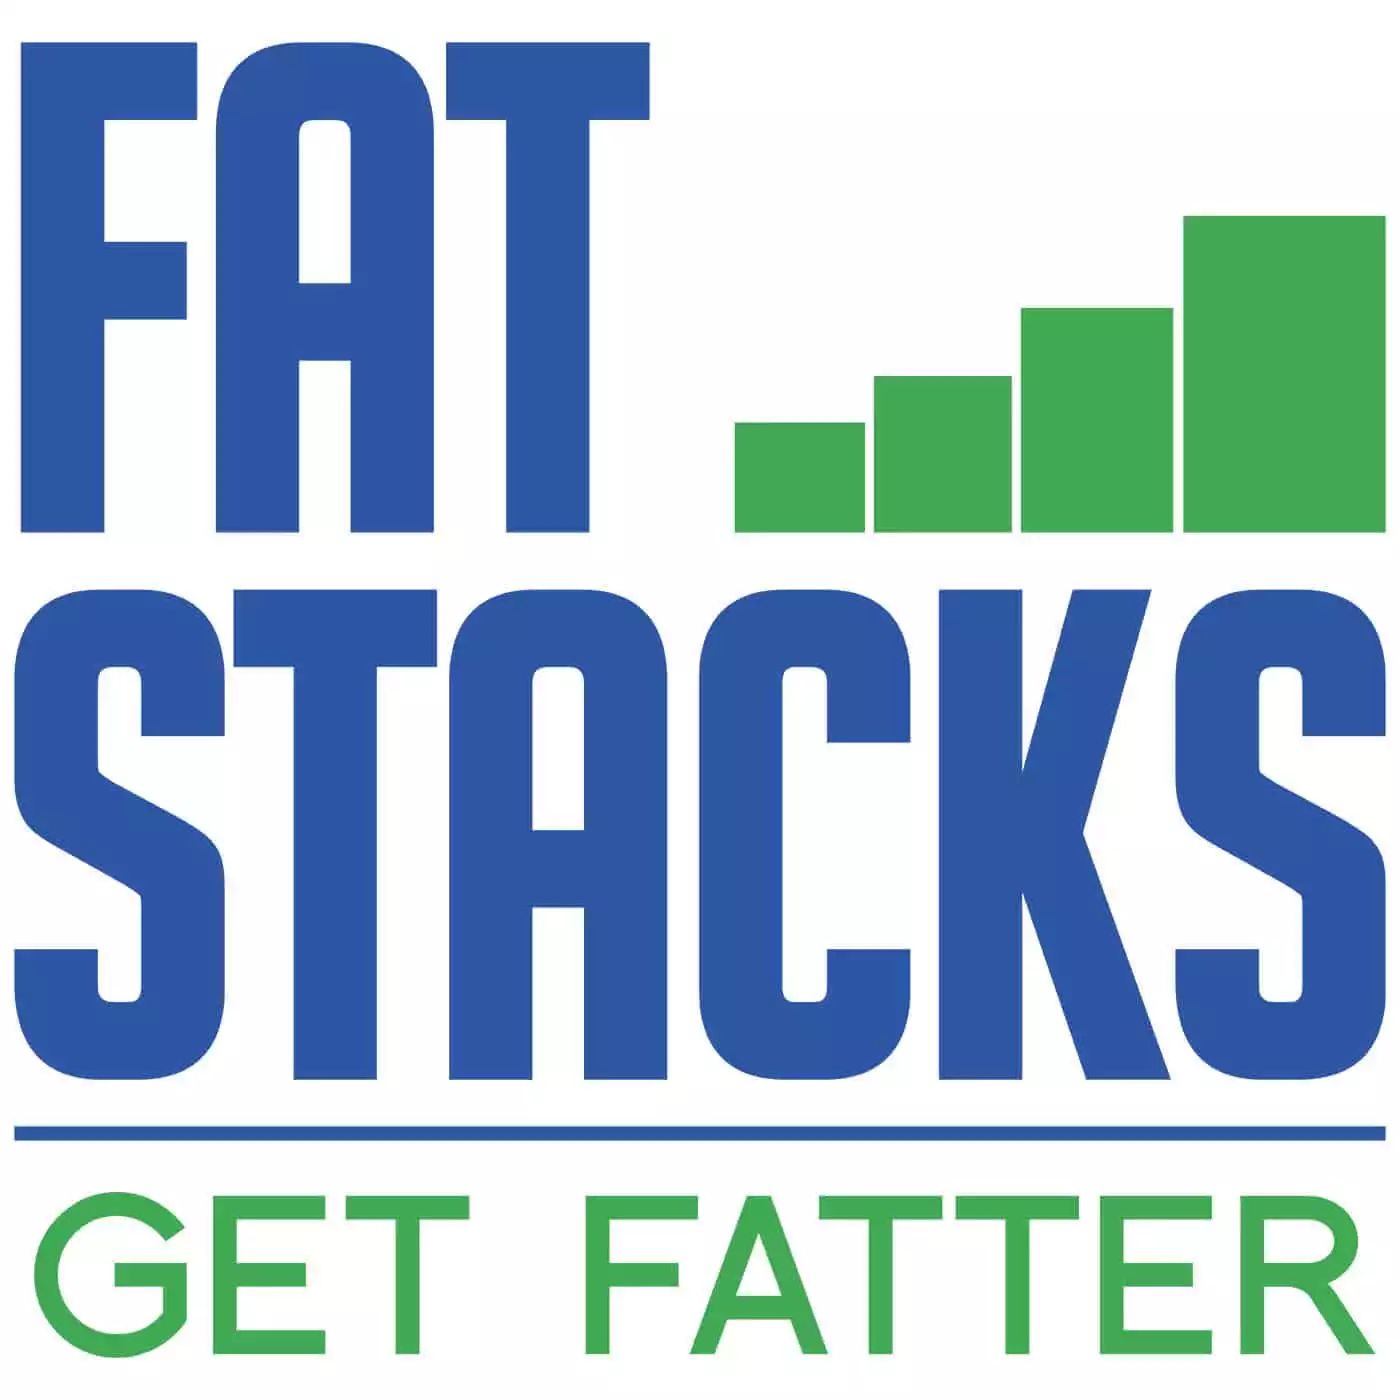 Niche Site Profits Course | Fat Stacks Blog